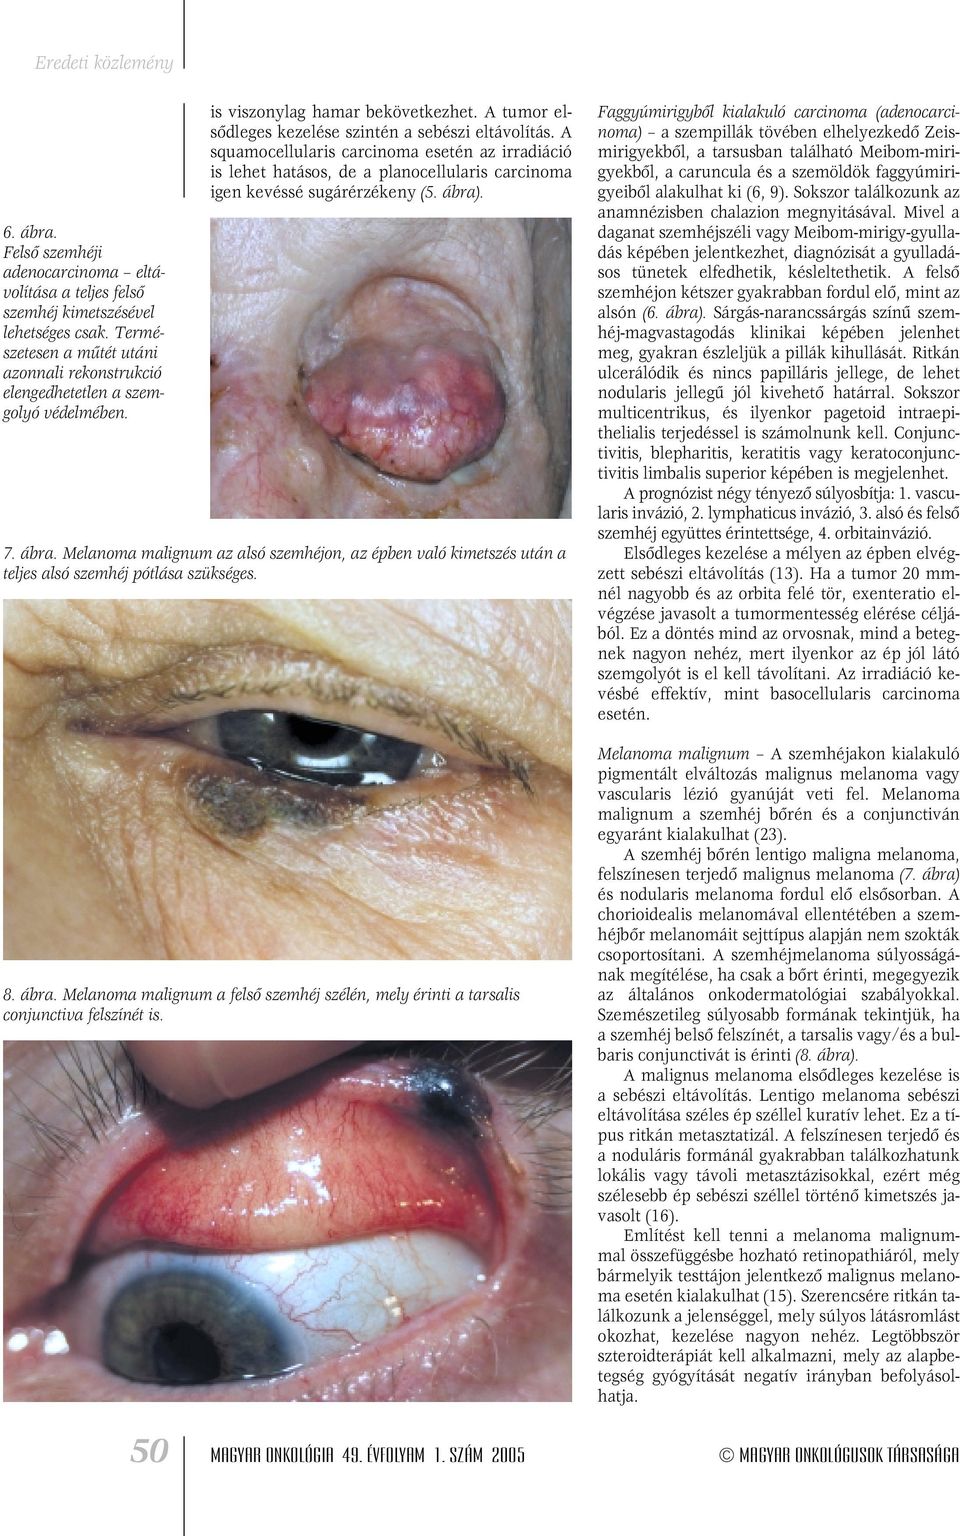 A squamocellularis carcinoma esetén az irradiáció is lehet hatásos, de a planocellularis carcinoma igen kevéssé sugárérzékeny (5. ábra)